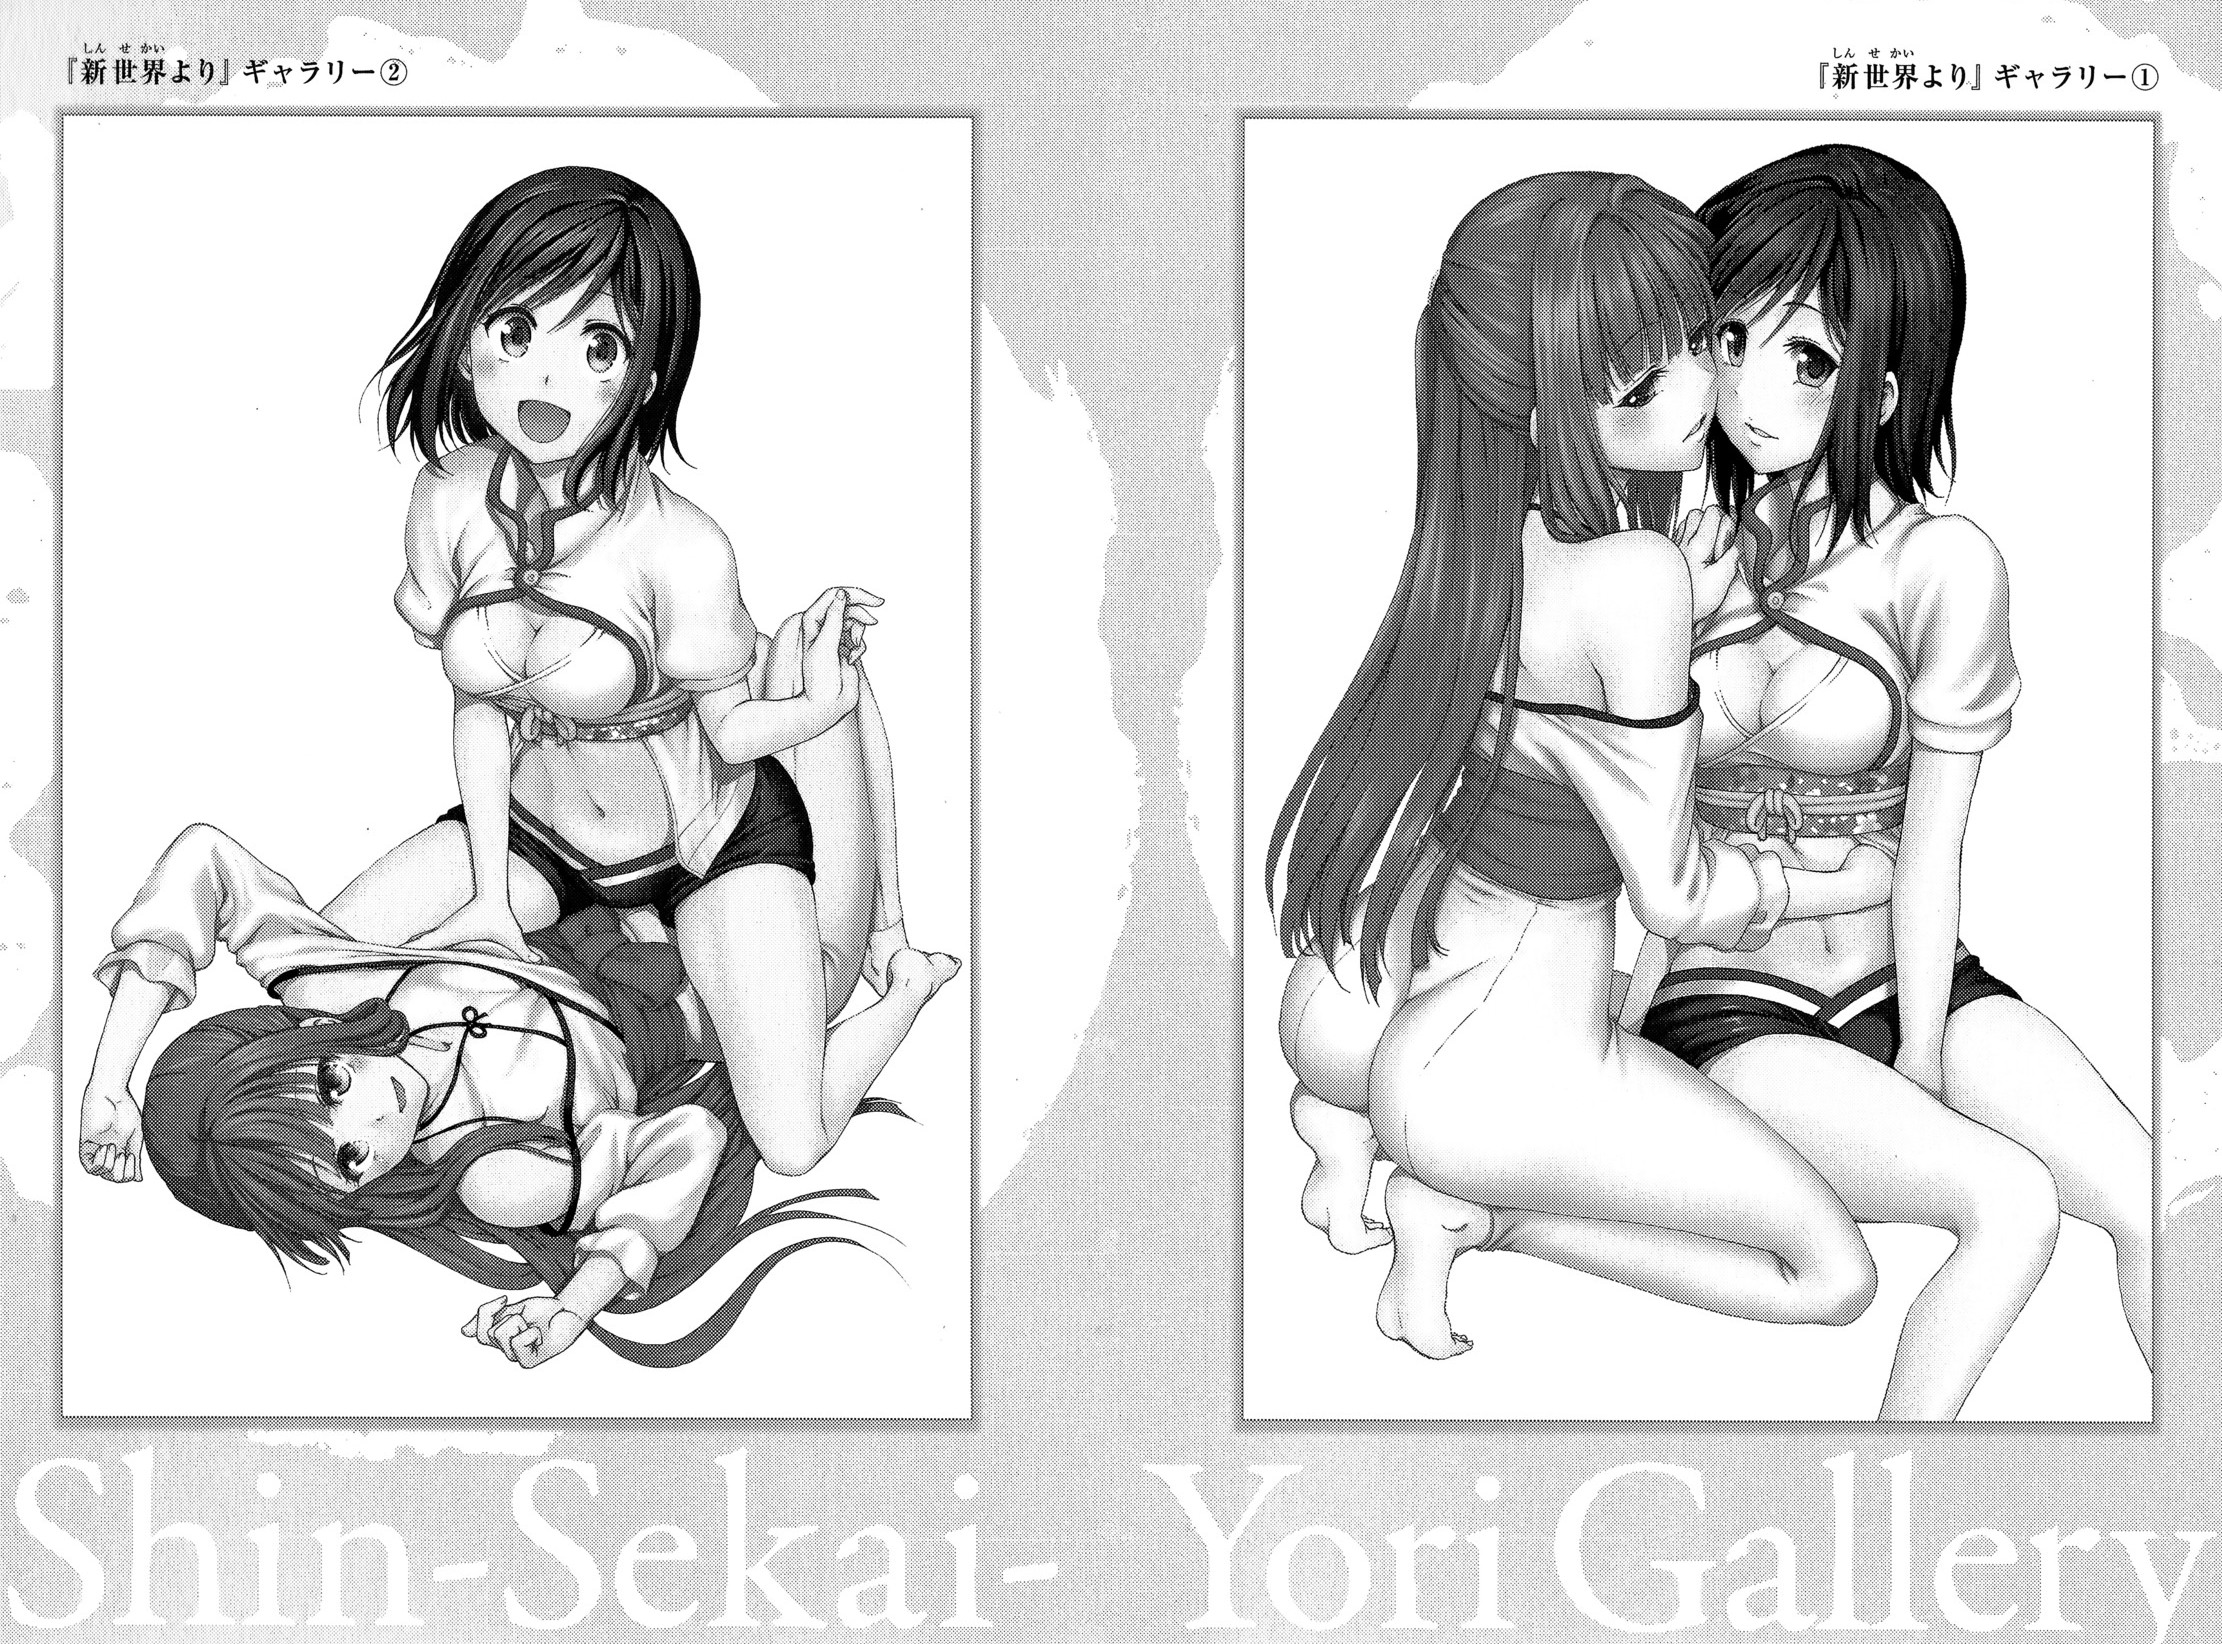 Shin Sekai Yori - Page 1